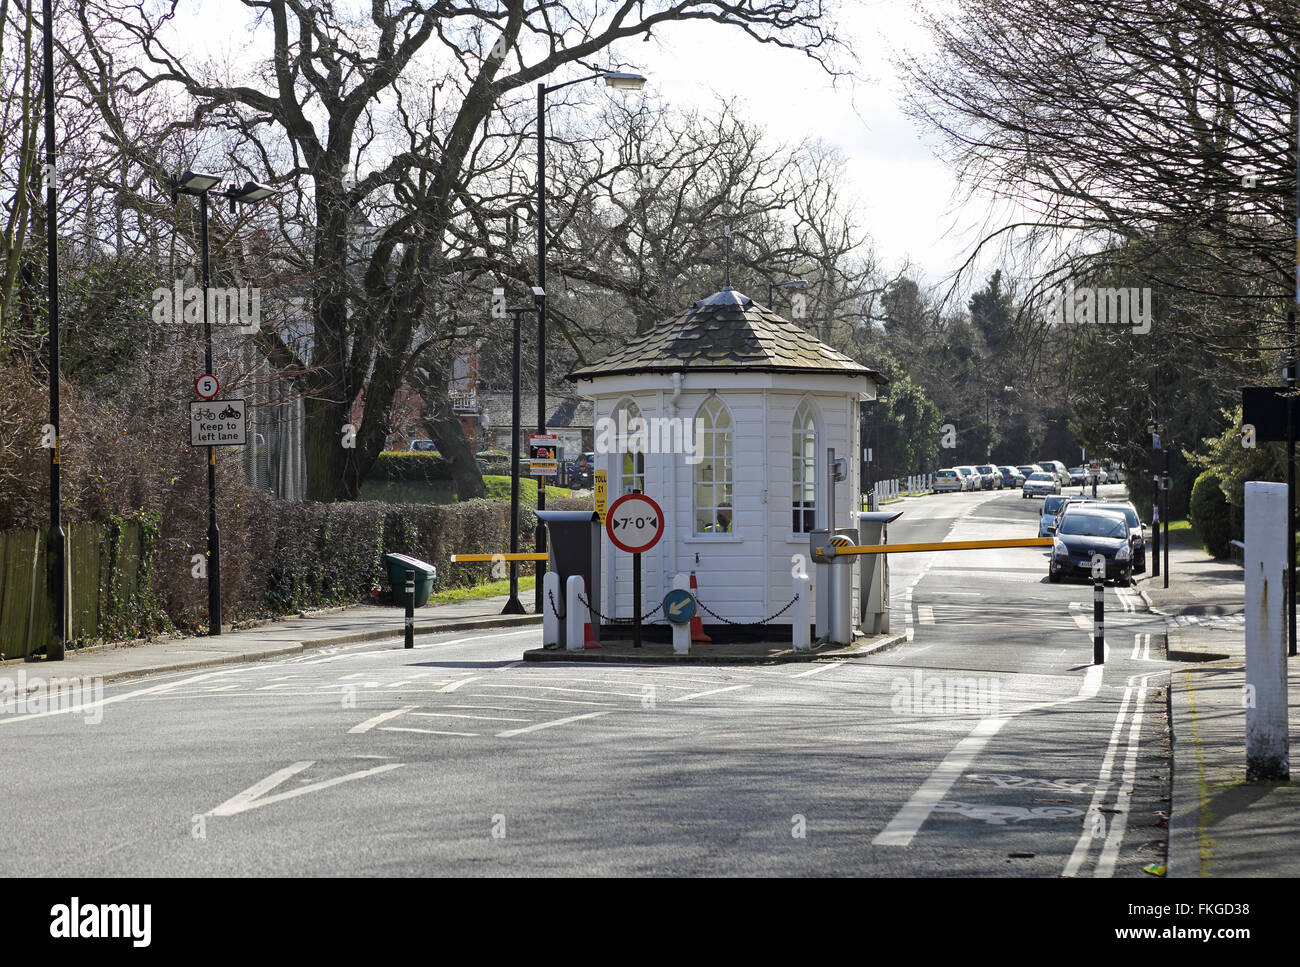 En la cabina de peaje de Dulwich College Road, Londres. Los coches siguen estando obligados a pagar un peaje de £1 para usar el camino. Foto de stock